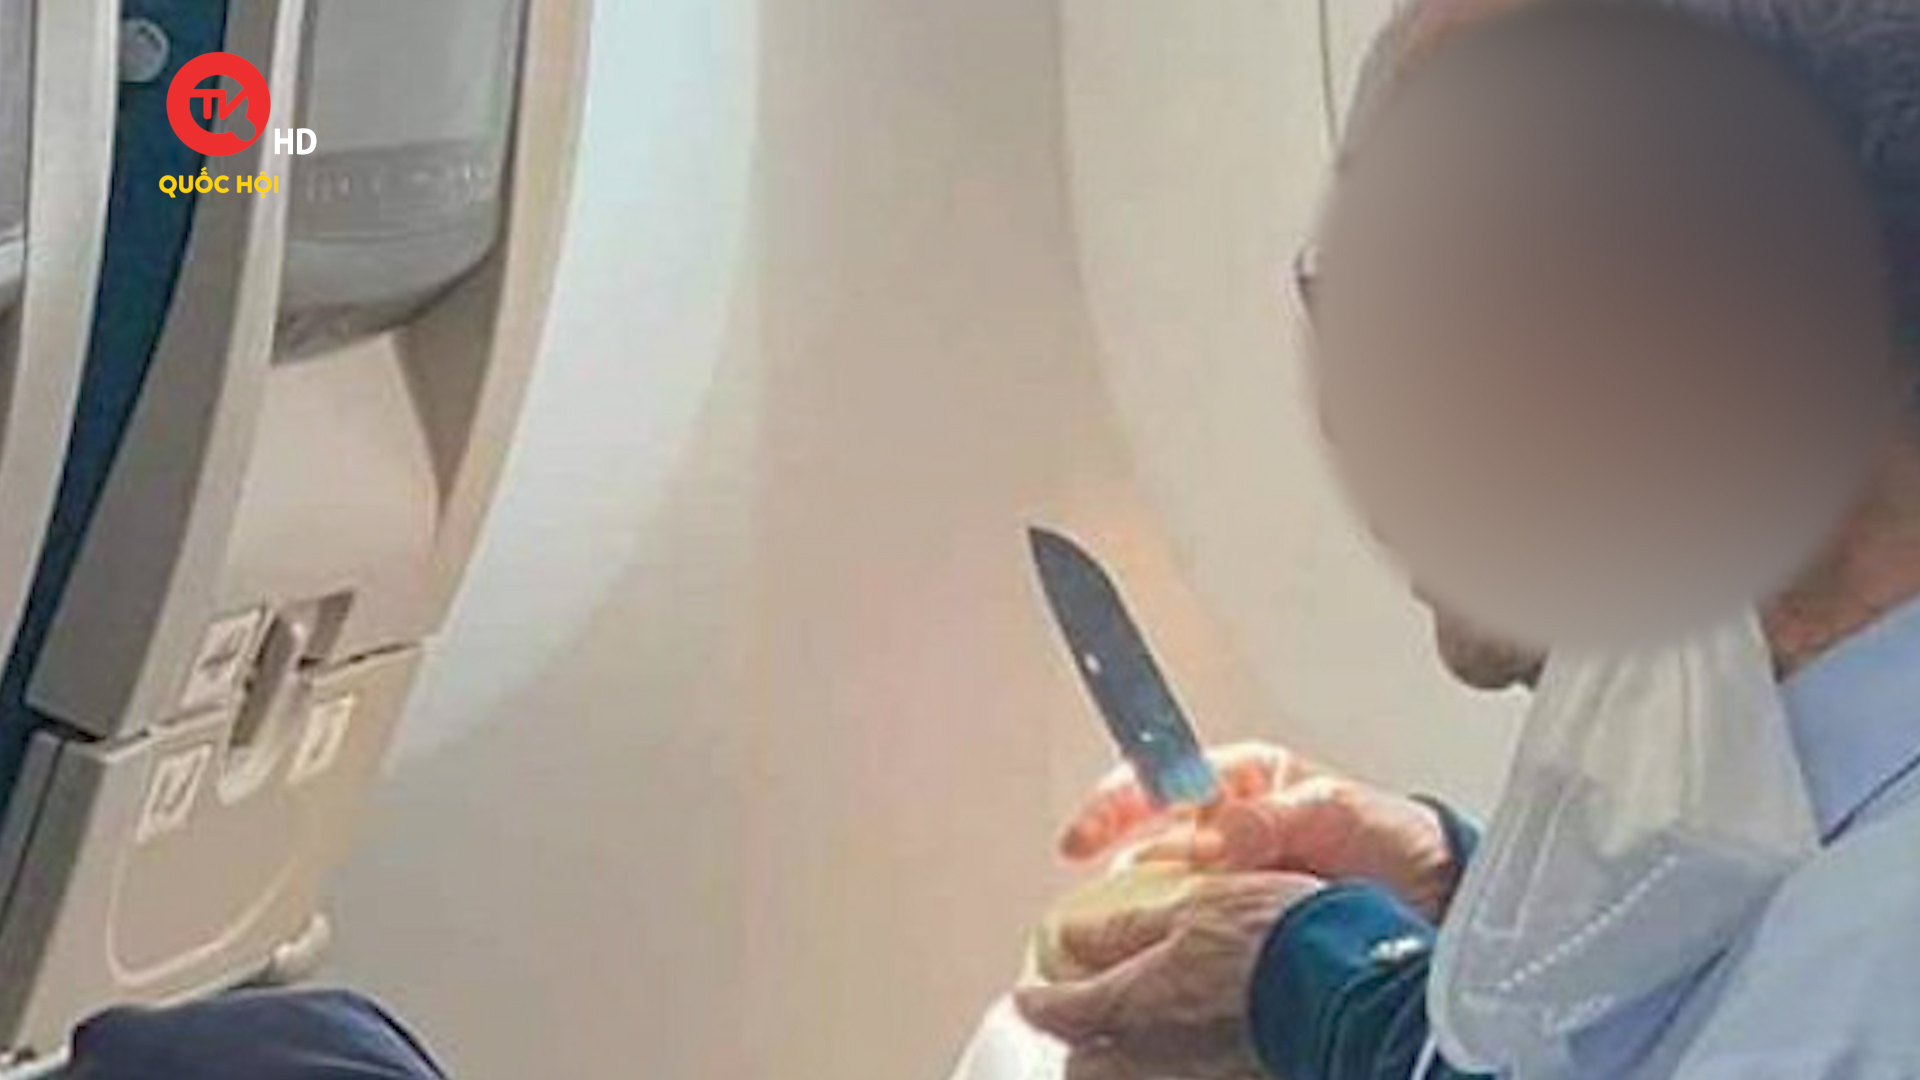 Hành khách mang dao gọt hoa quả trên máy bay: Cục Hàng không nói gì?